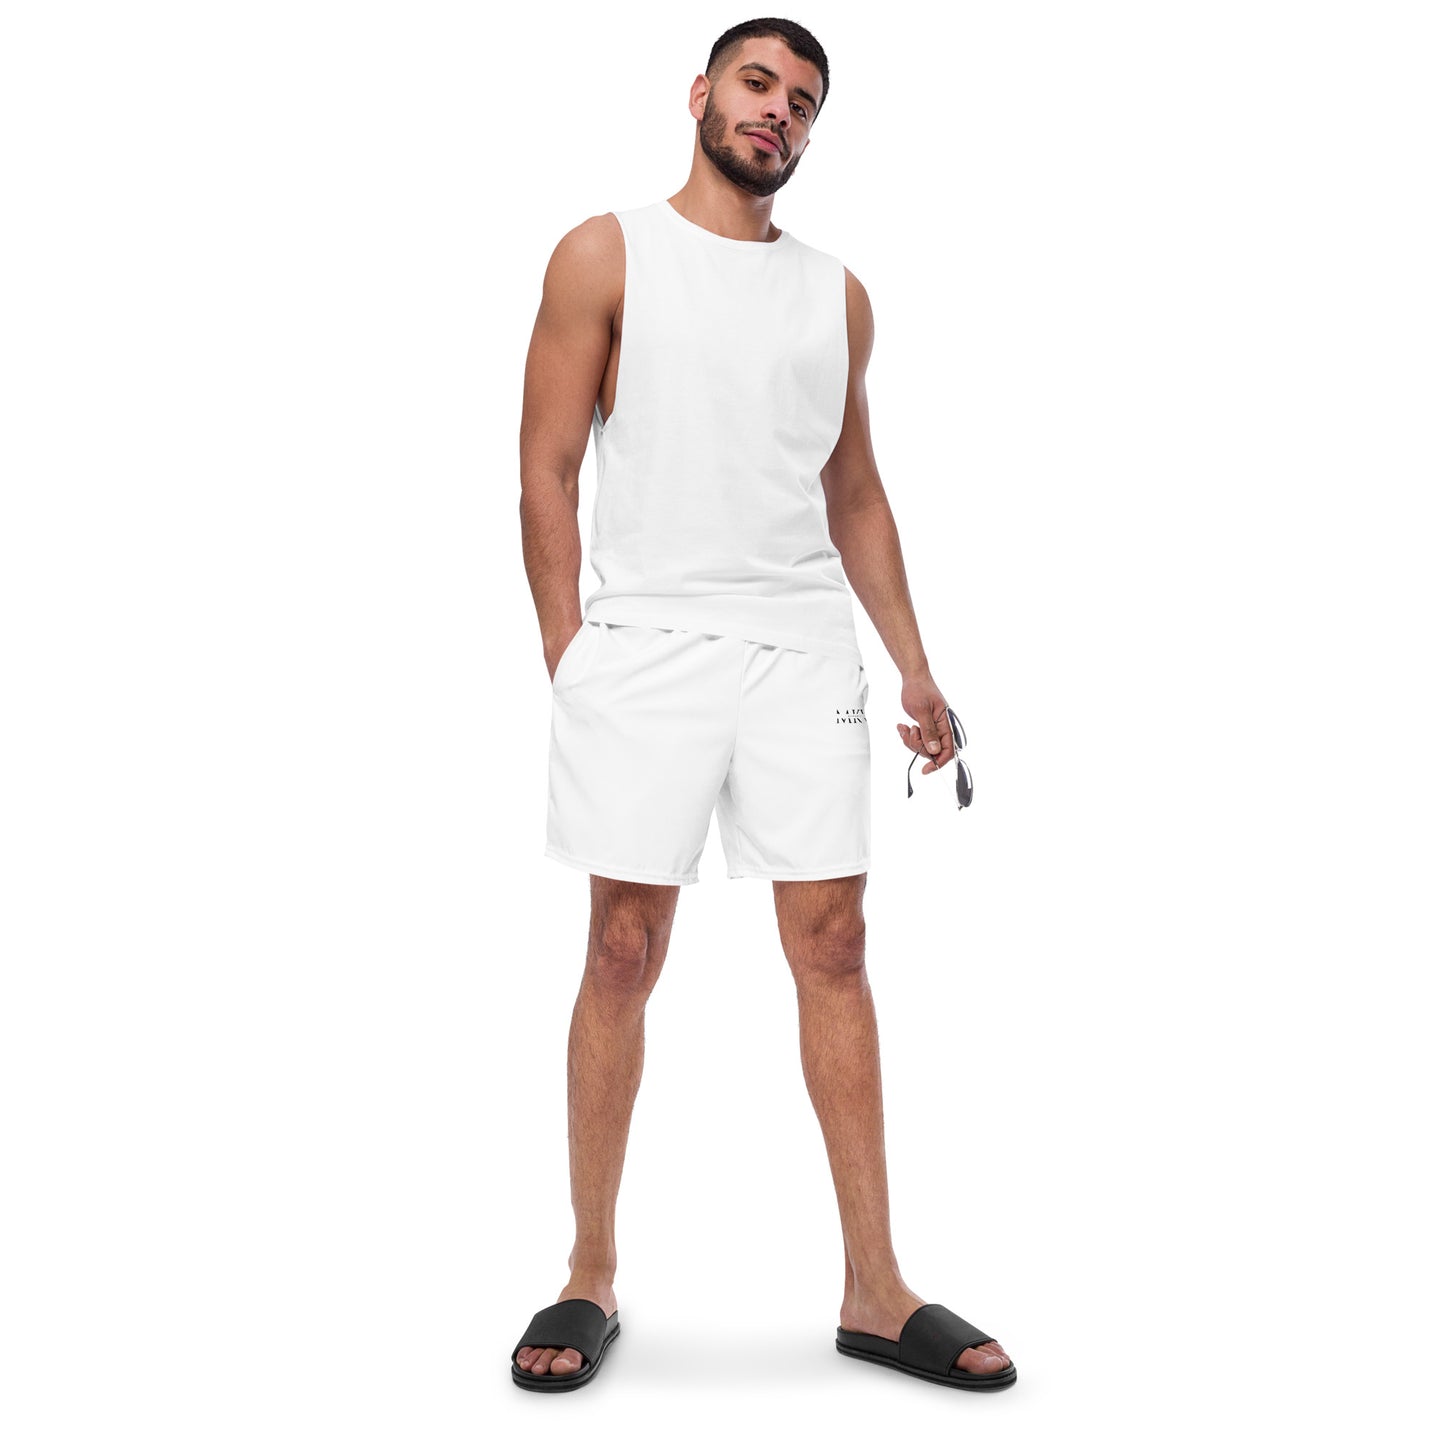 Menkrav Initiate white swimsuit